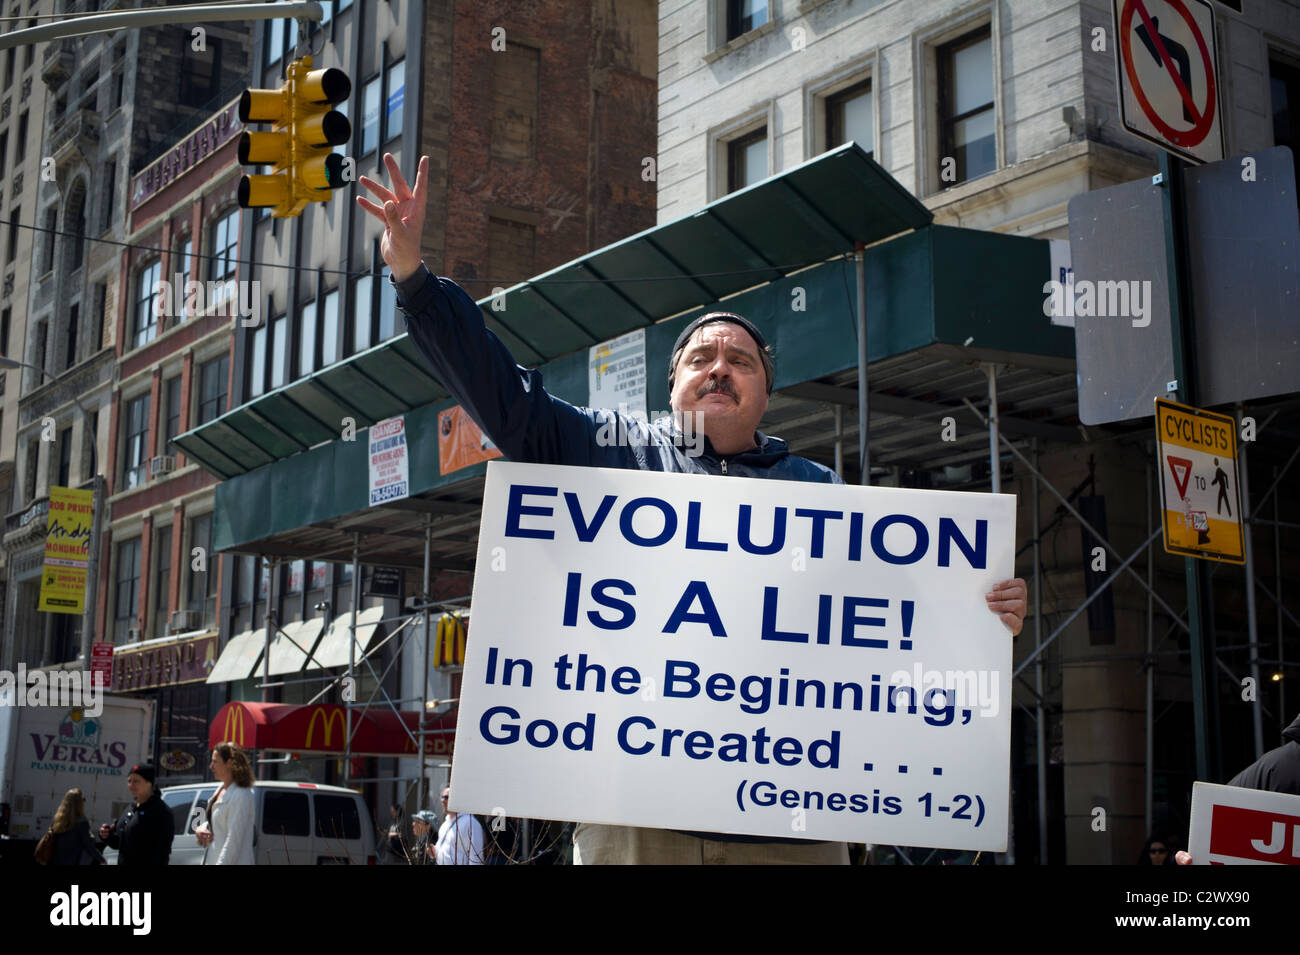 Ein religiöser Eiferer proselytizes gegen die Evolutionstheorie in New York auf Samstag, 9. April 2011. (© Frances M. Roberts) Stockfoto